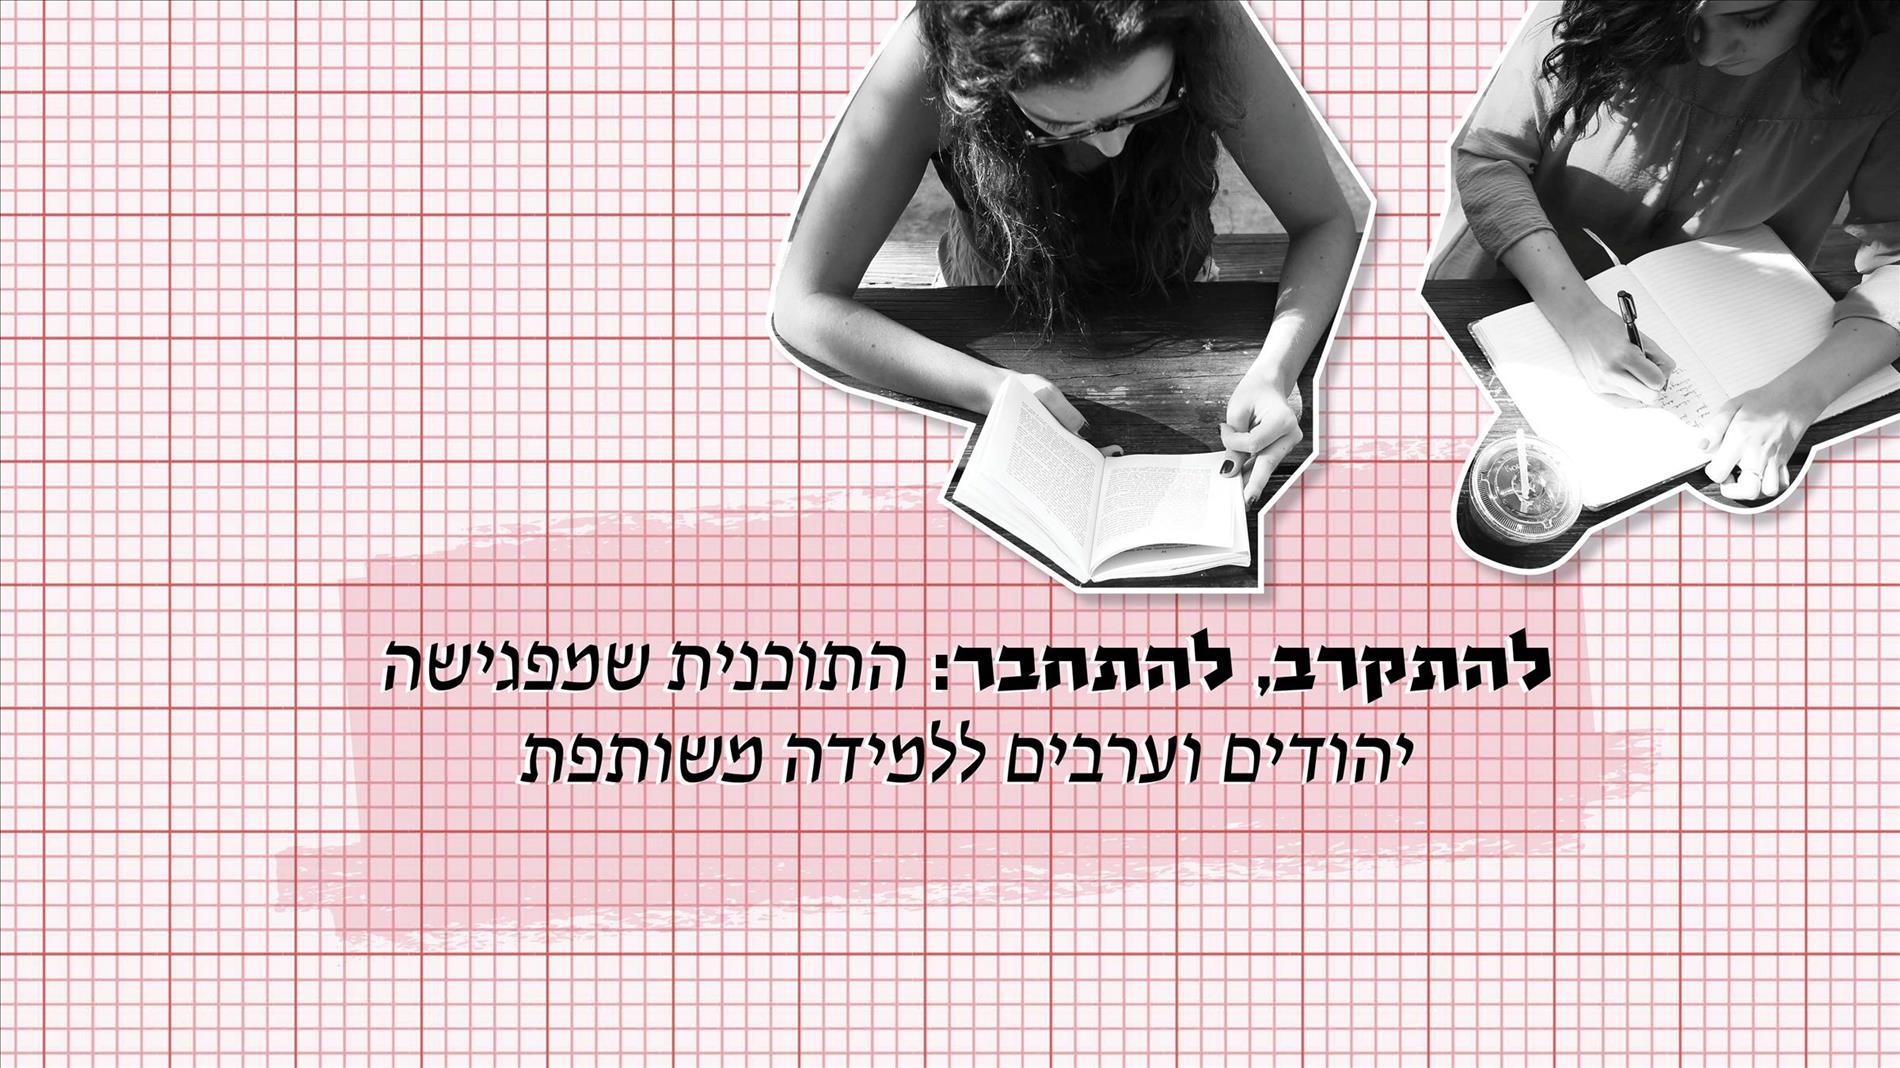 להתקרב, להתחבר: התוכנית שמפגישה יהודים וערבים ללמידה משותפת